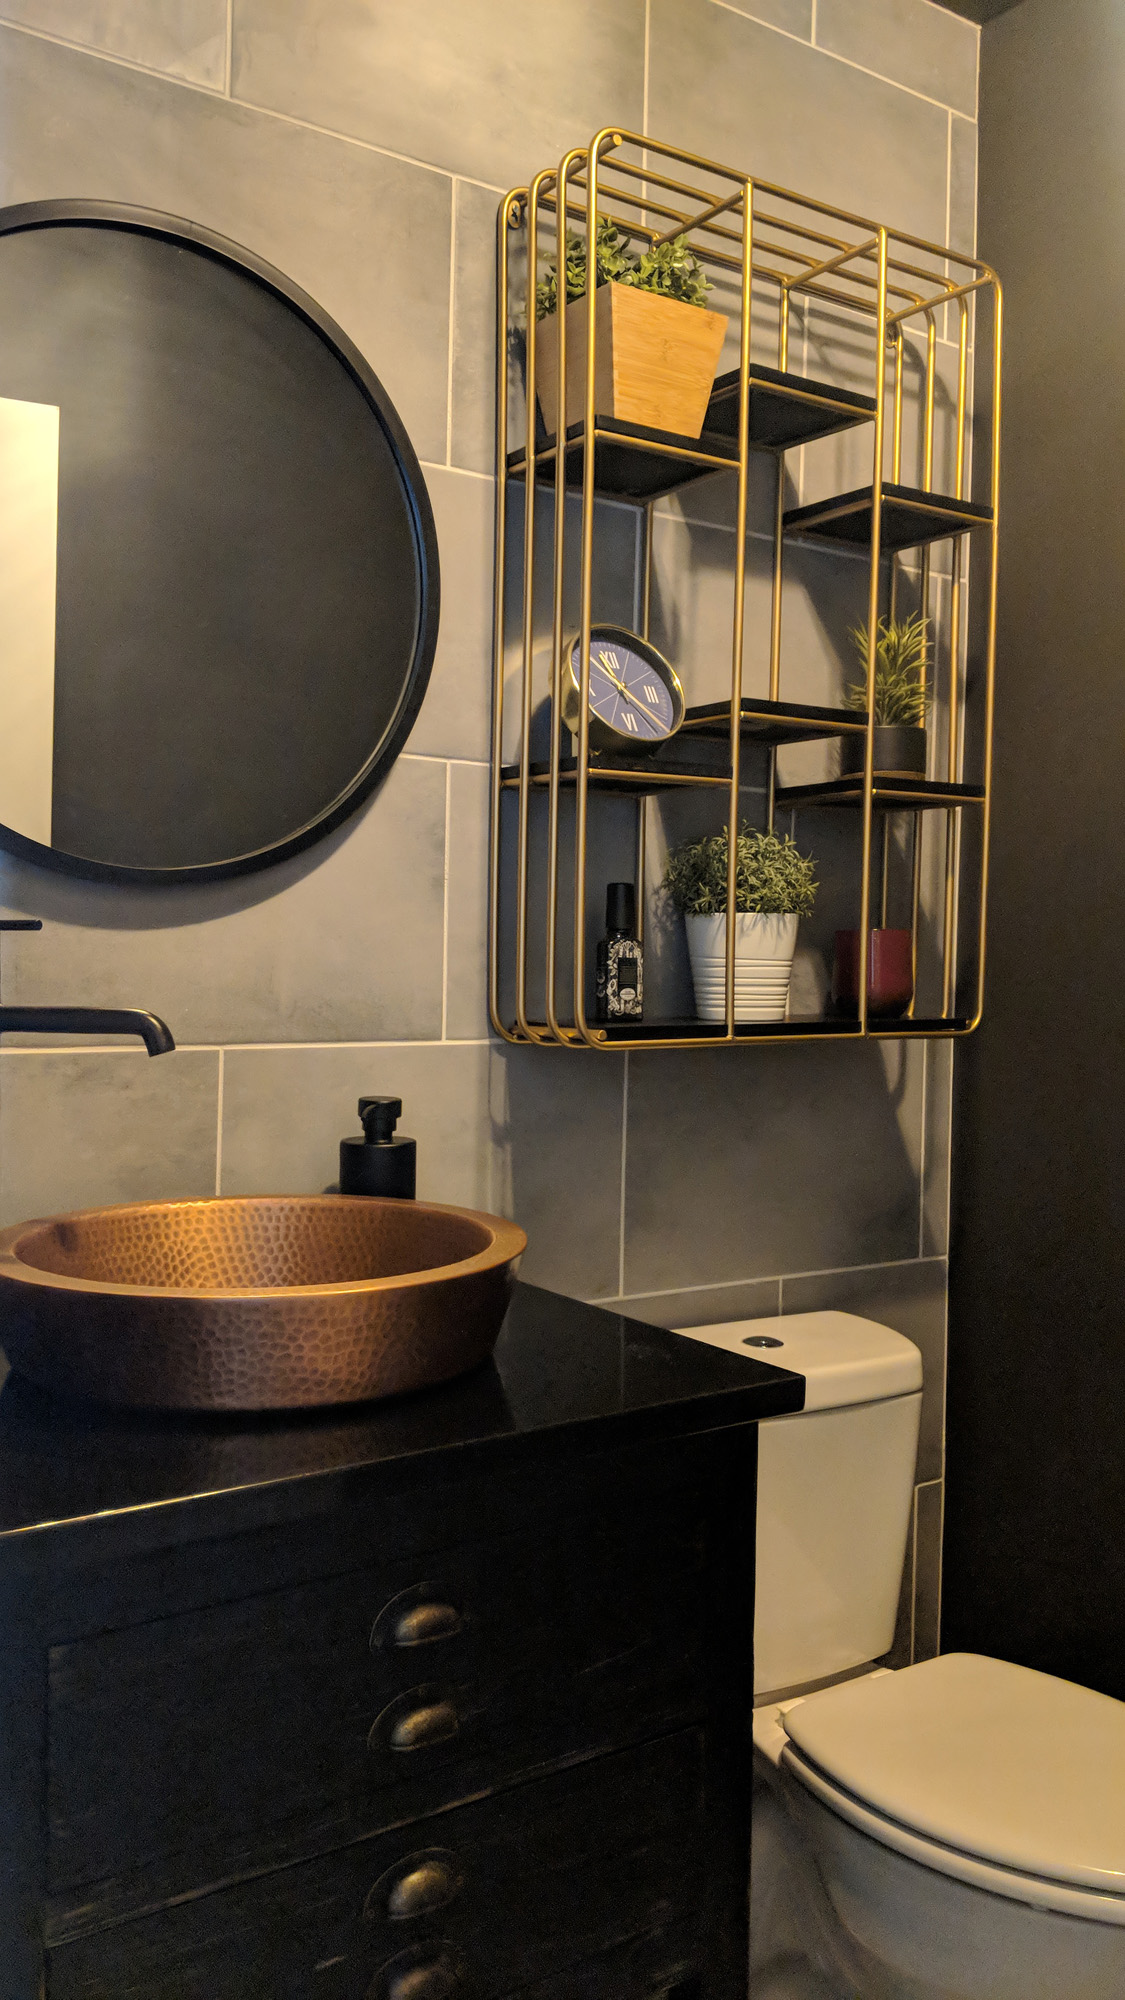 Tile wall & cool sink vessel